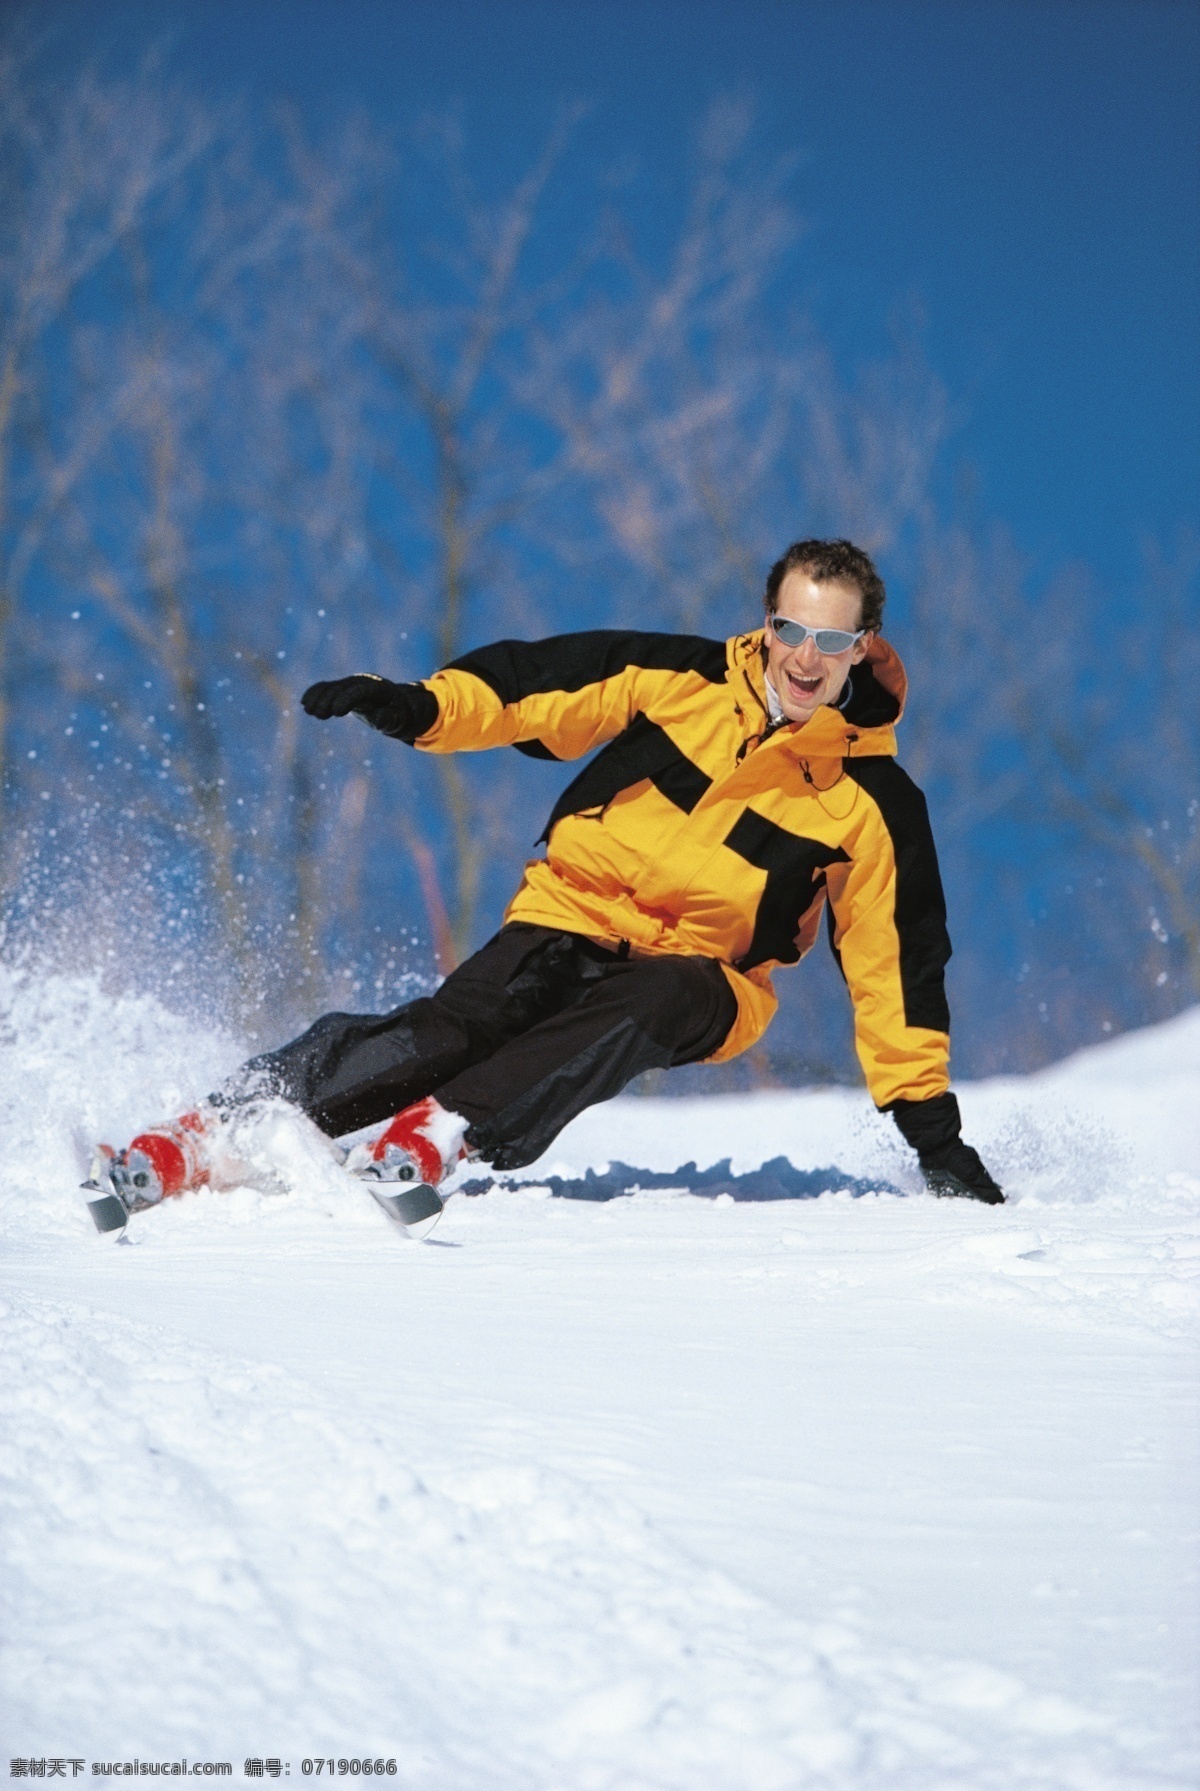 男性 滑雪 运动员 冬天 雪地运动 划雪运动 极限运动 体育项目 男性运动员 下滑 速度 运动图片 生活百科 雪山 美丽 雪景 风景 摄影图片 高清图片 滑雪图片